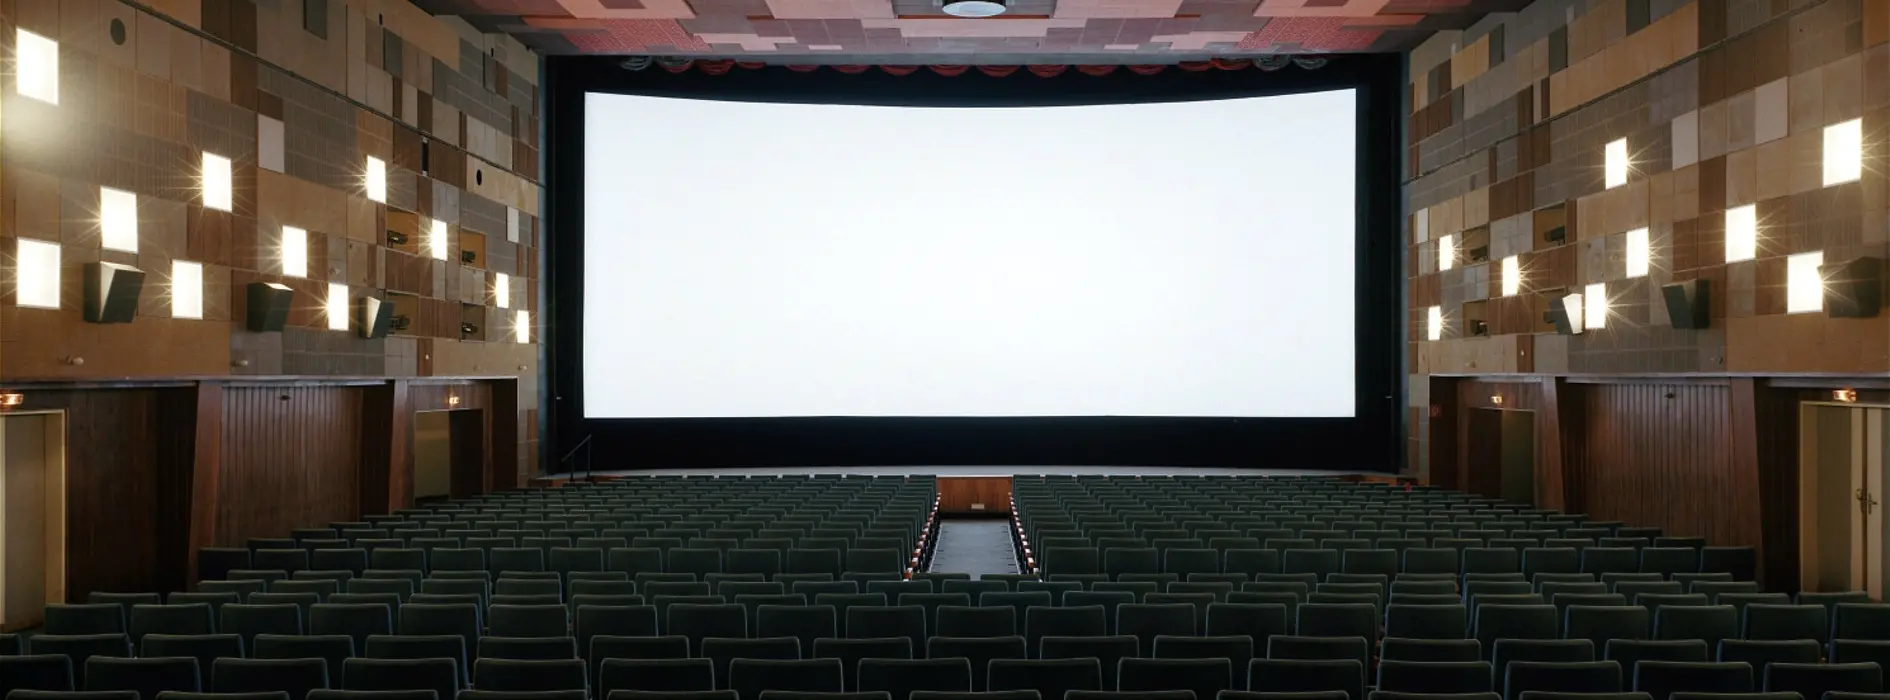 Kinosaal mit offenem Vorhang, Breitleinwand sichtbar